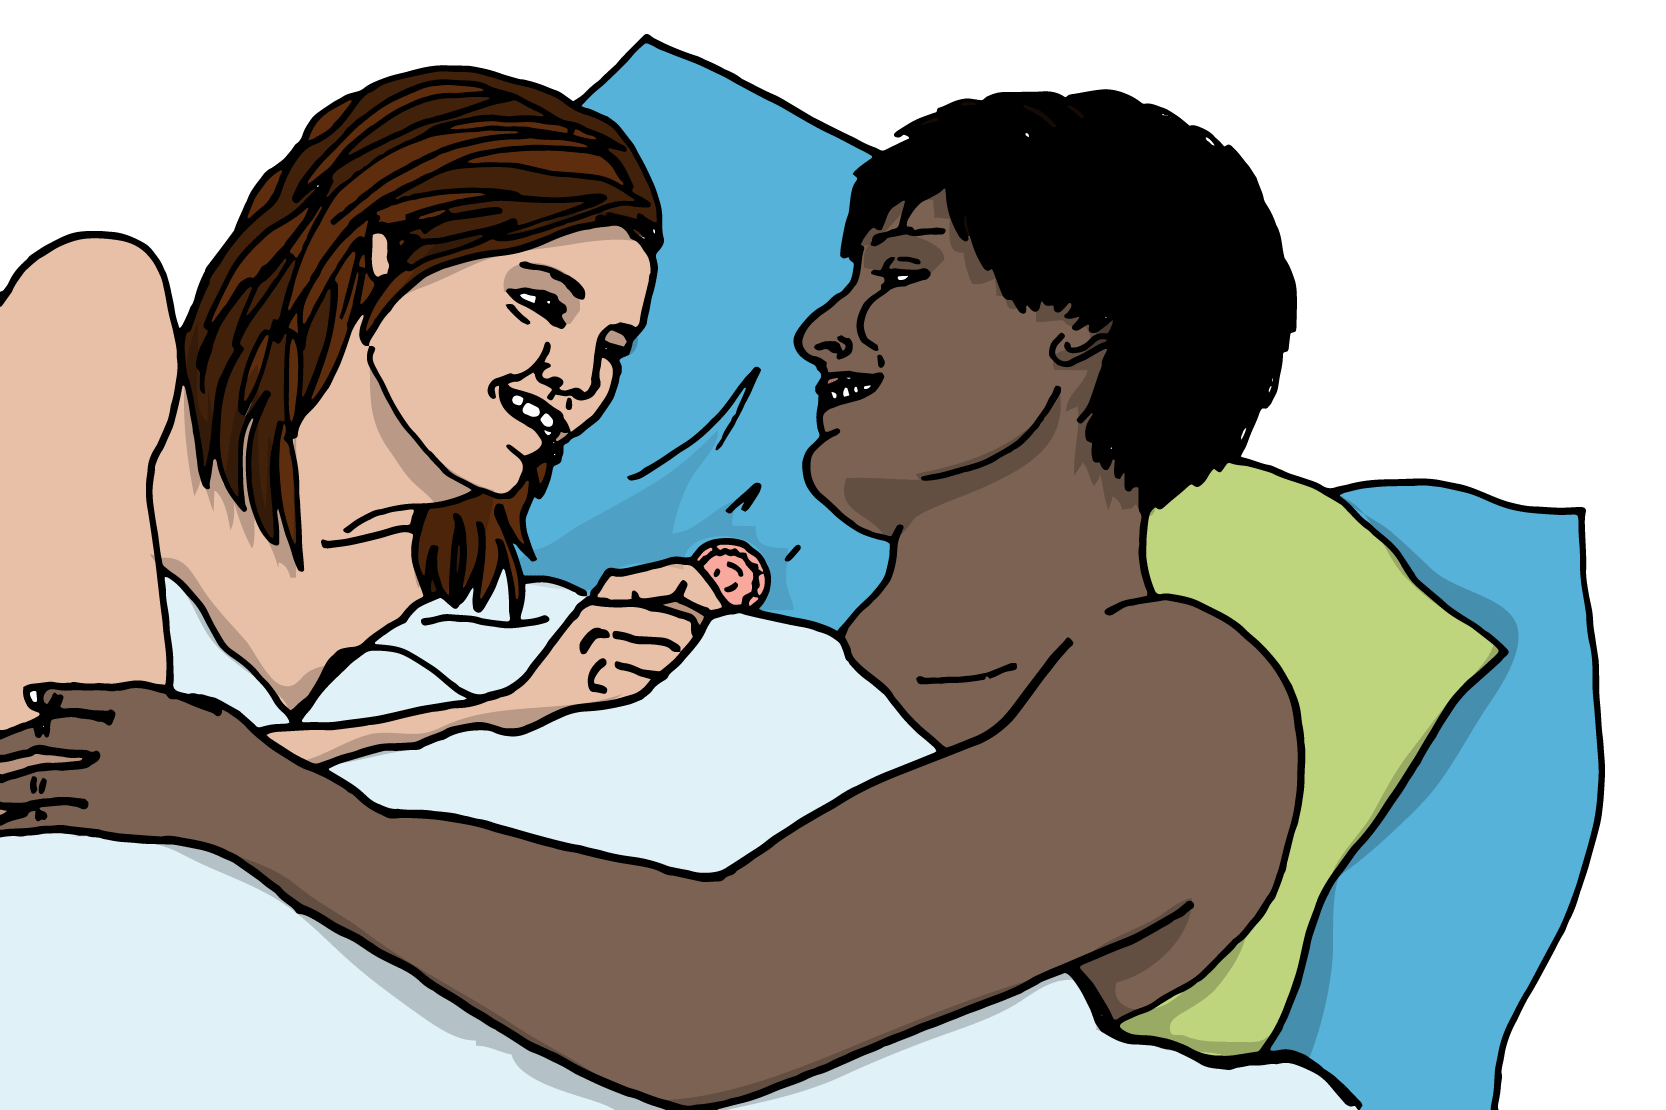 Två personer som ligger i en säng. Den ena håller en kondom i handen. Illustration.